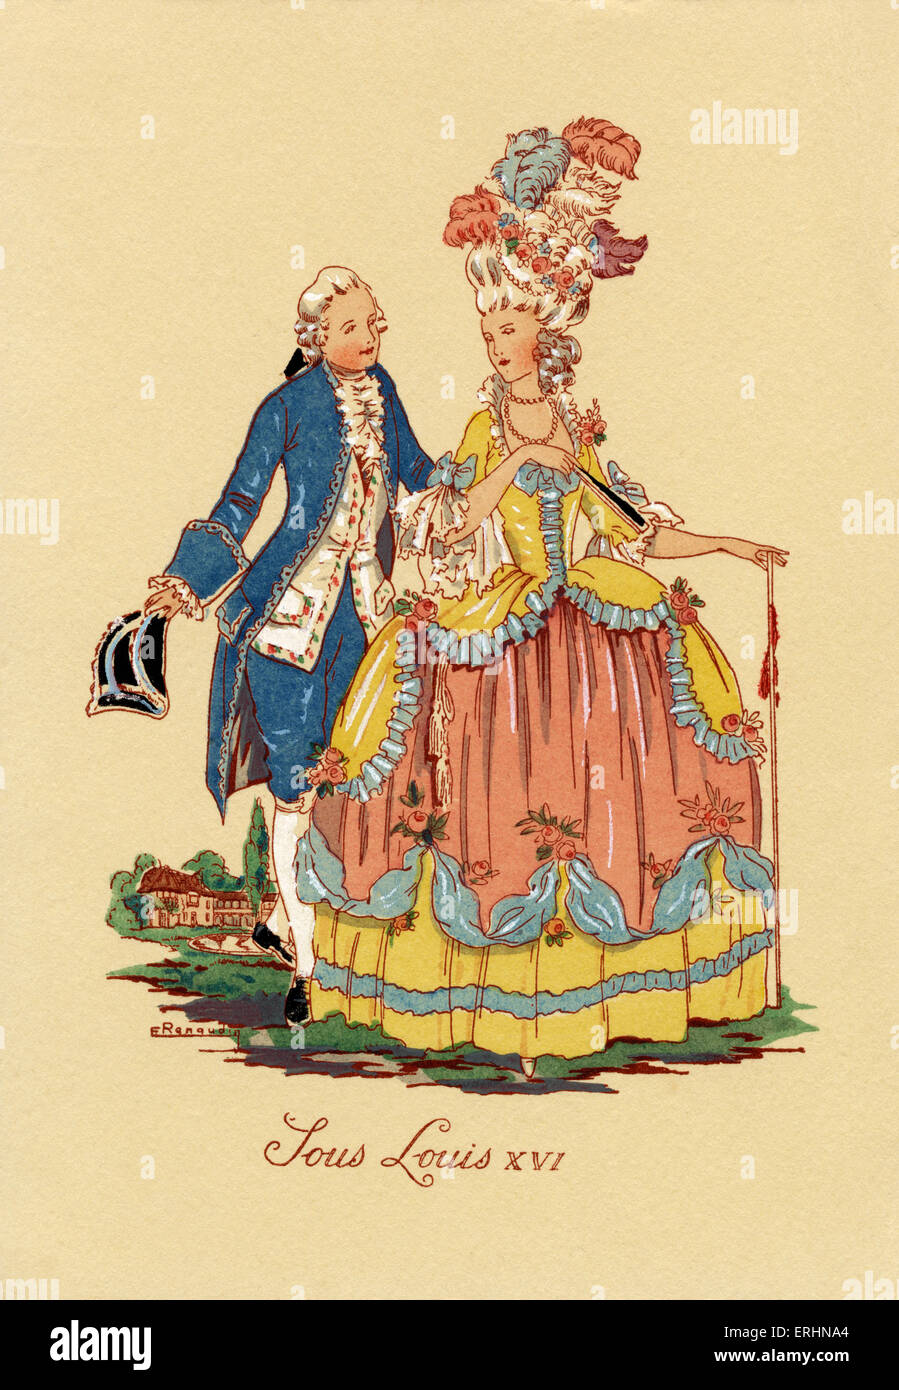 Höfische paar aus Epoche Louis XVI von Frankreich. Krinoline Skit, hohen Frisur, drei dreieckigen Hut, weiße Perücke. Stockfoto